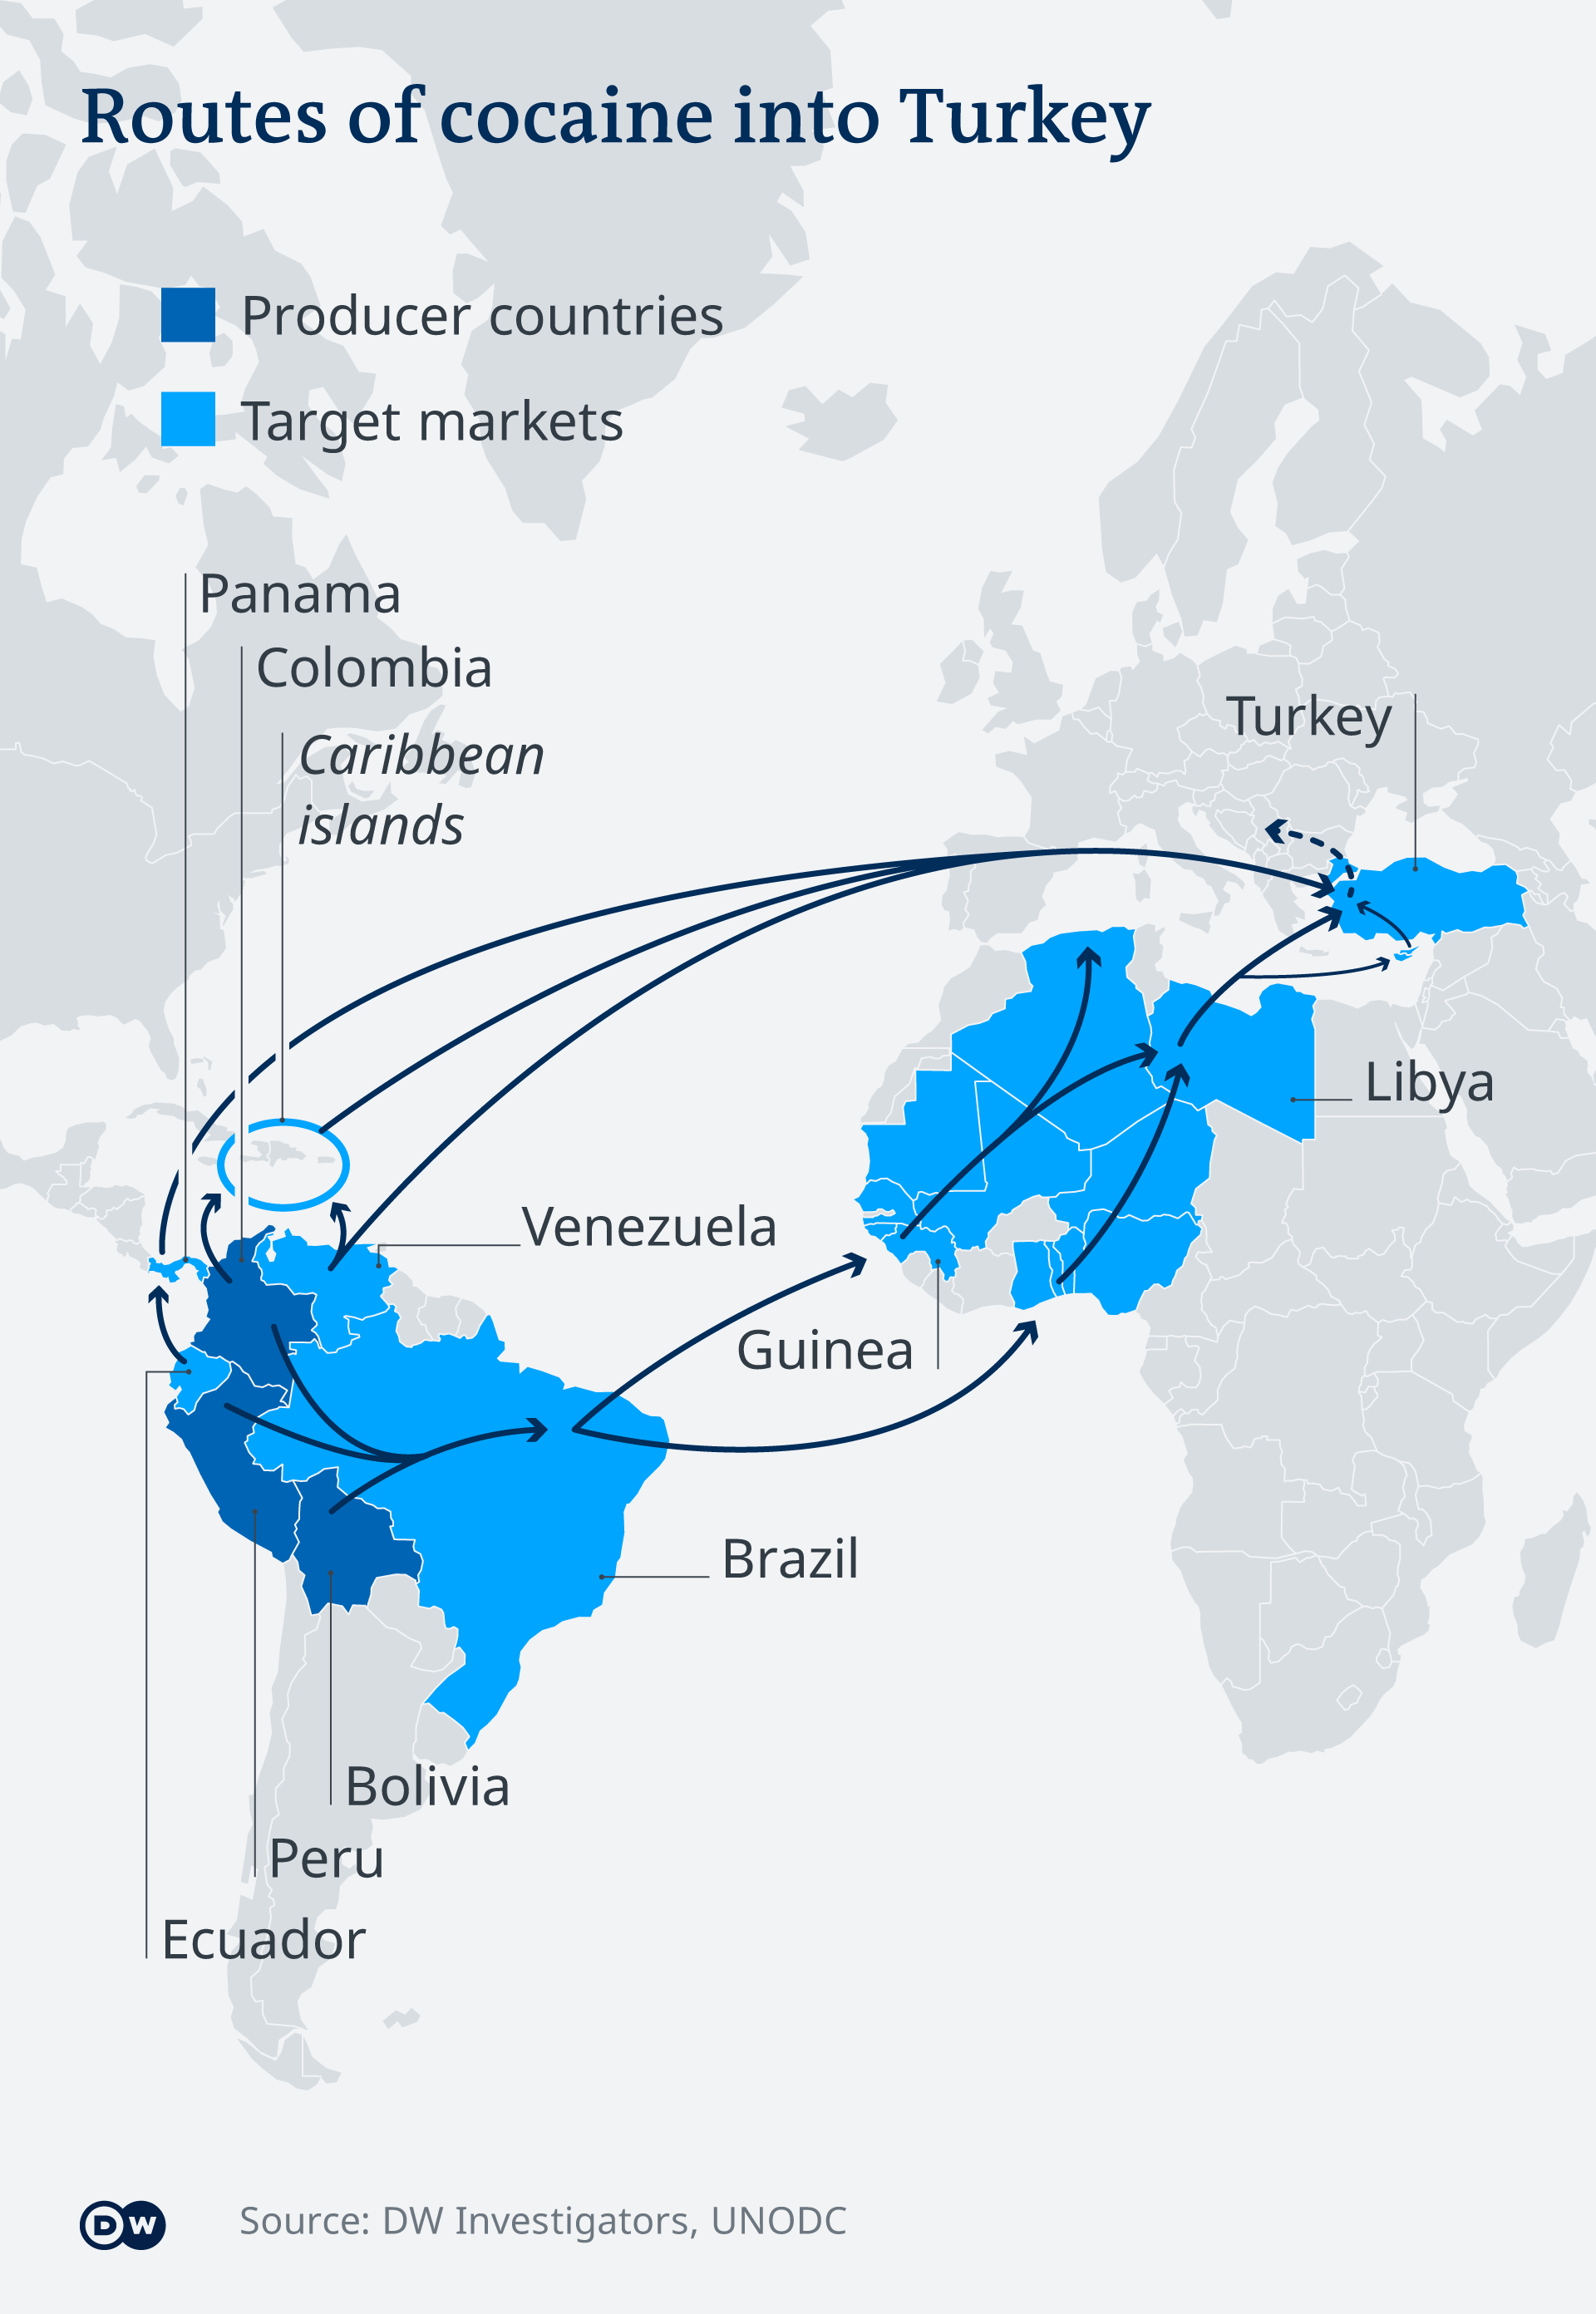 Putovi kokaina iz Južne Amerike do Turske